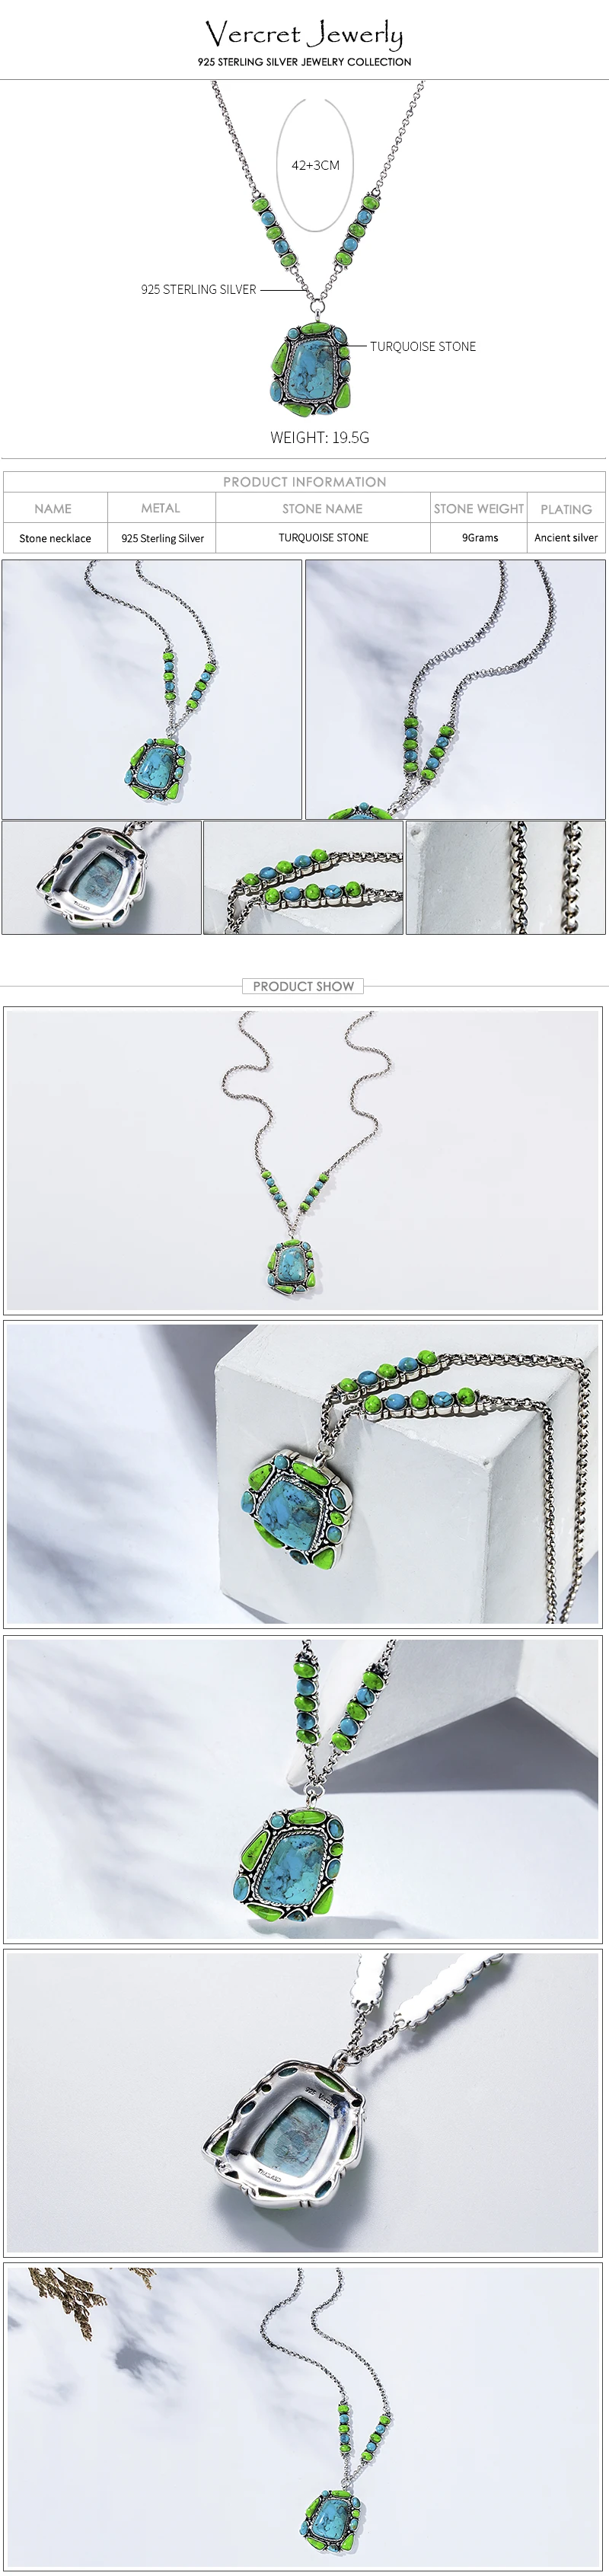 Vercret Винтаж 925 пробы серебро бирюзовое ожерелье для Для женщин Свадебные Подвеска-ожерелье предпродажа